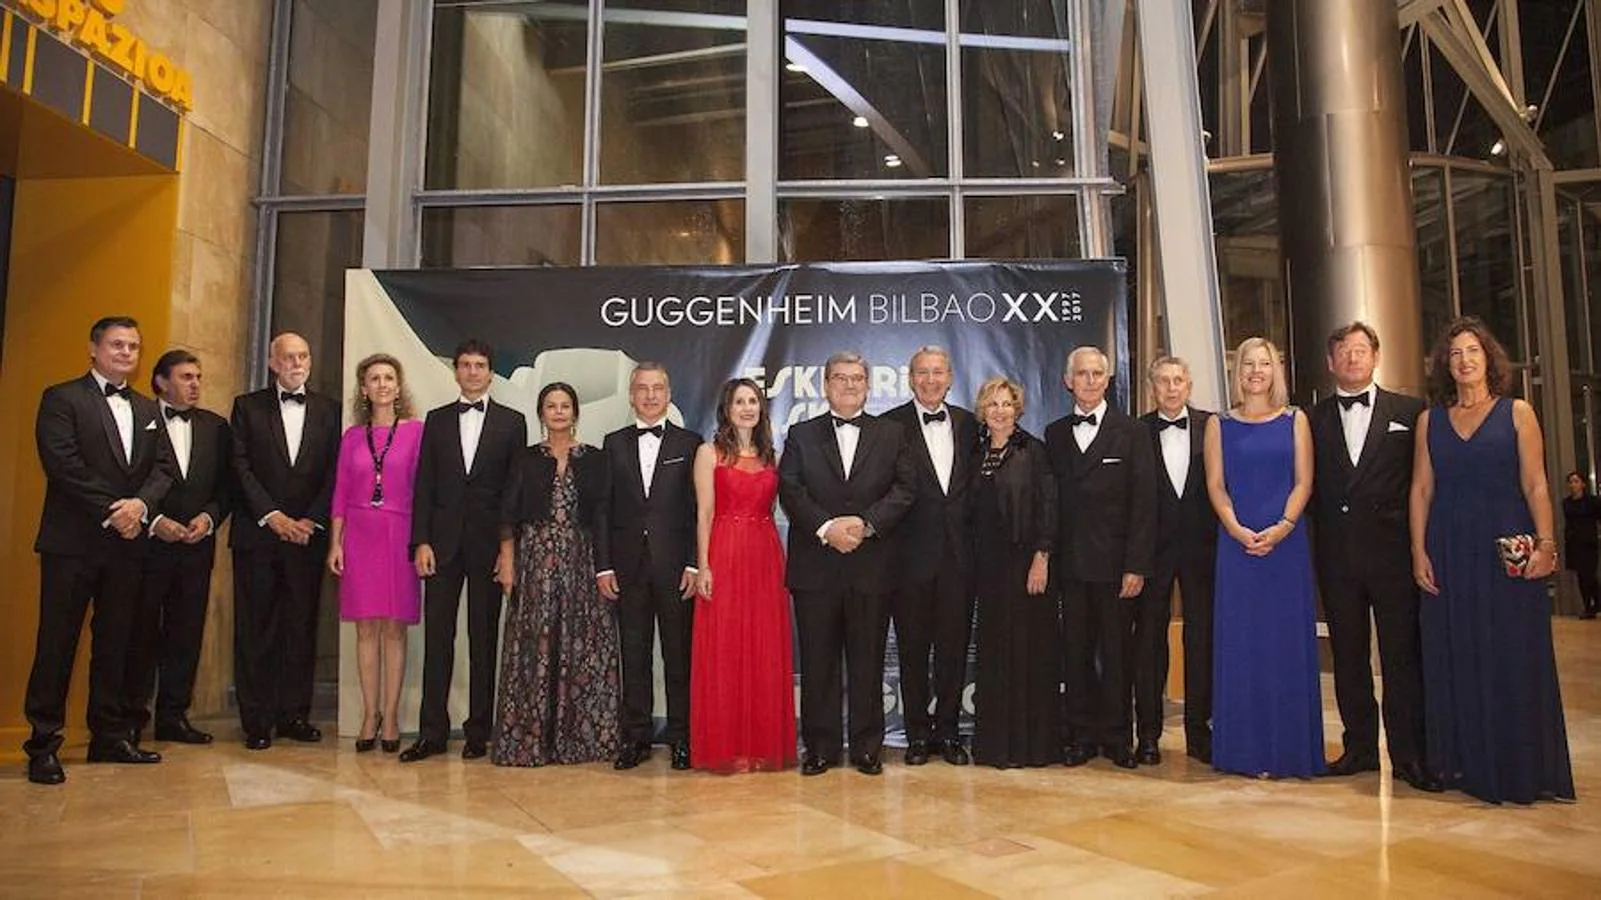 En imágenes: Ambiente de gala en la cena del Guggenheim para conmemorar su XX aniversario